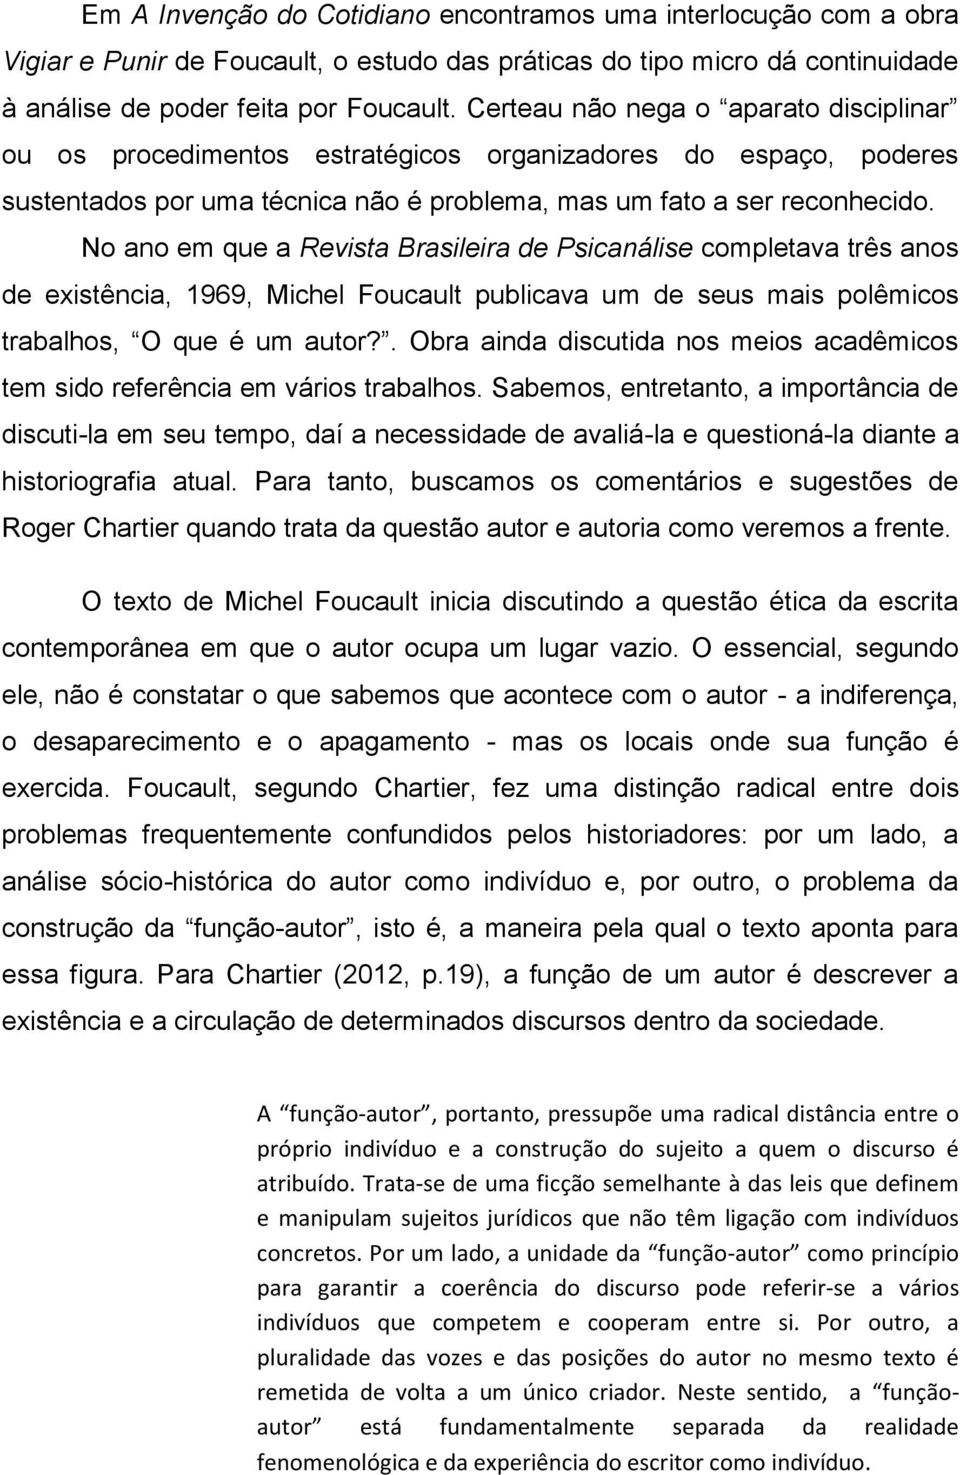 No ano em que a Revista Brasileira de Psicanálise completava três anos de existência, 1969, Michel Foucault publicava um de seus mais polêmicos trabalhos, O que é um autor?